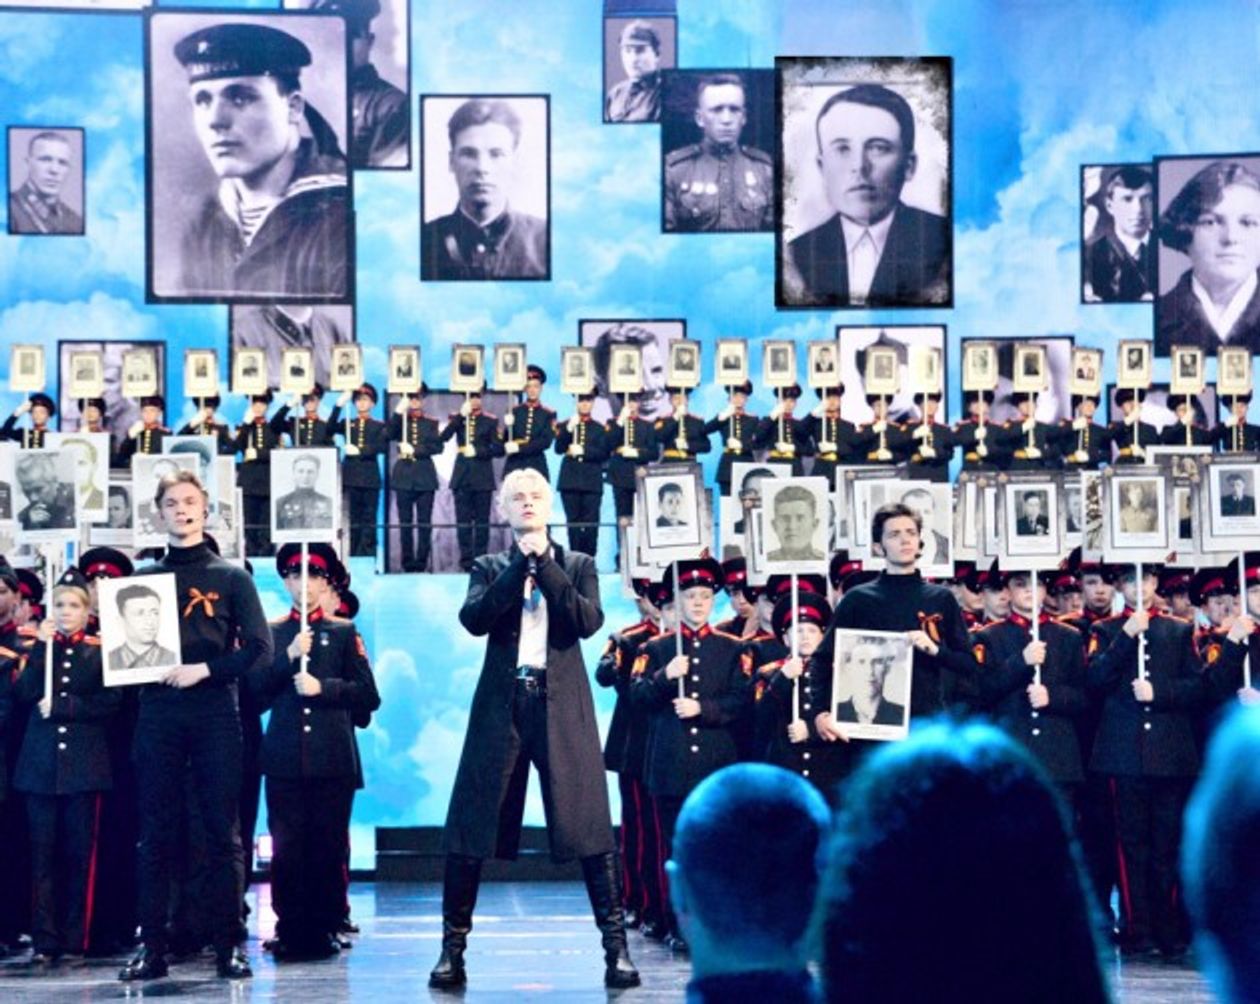 Shaman исполняет песню «Встанем» на концерте в Кремле